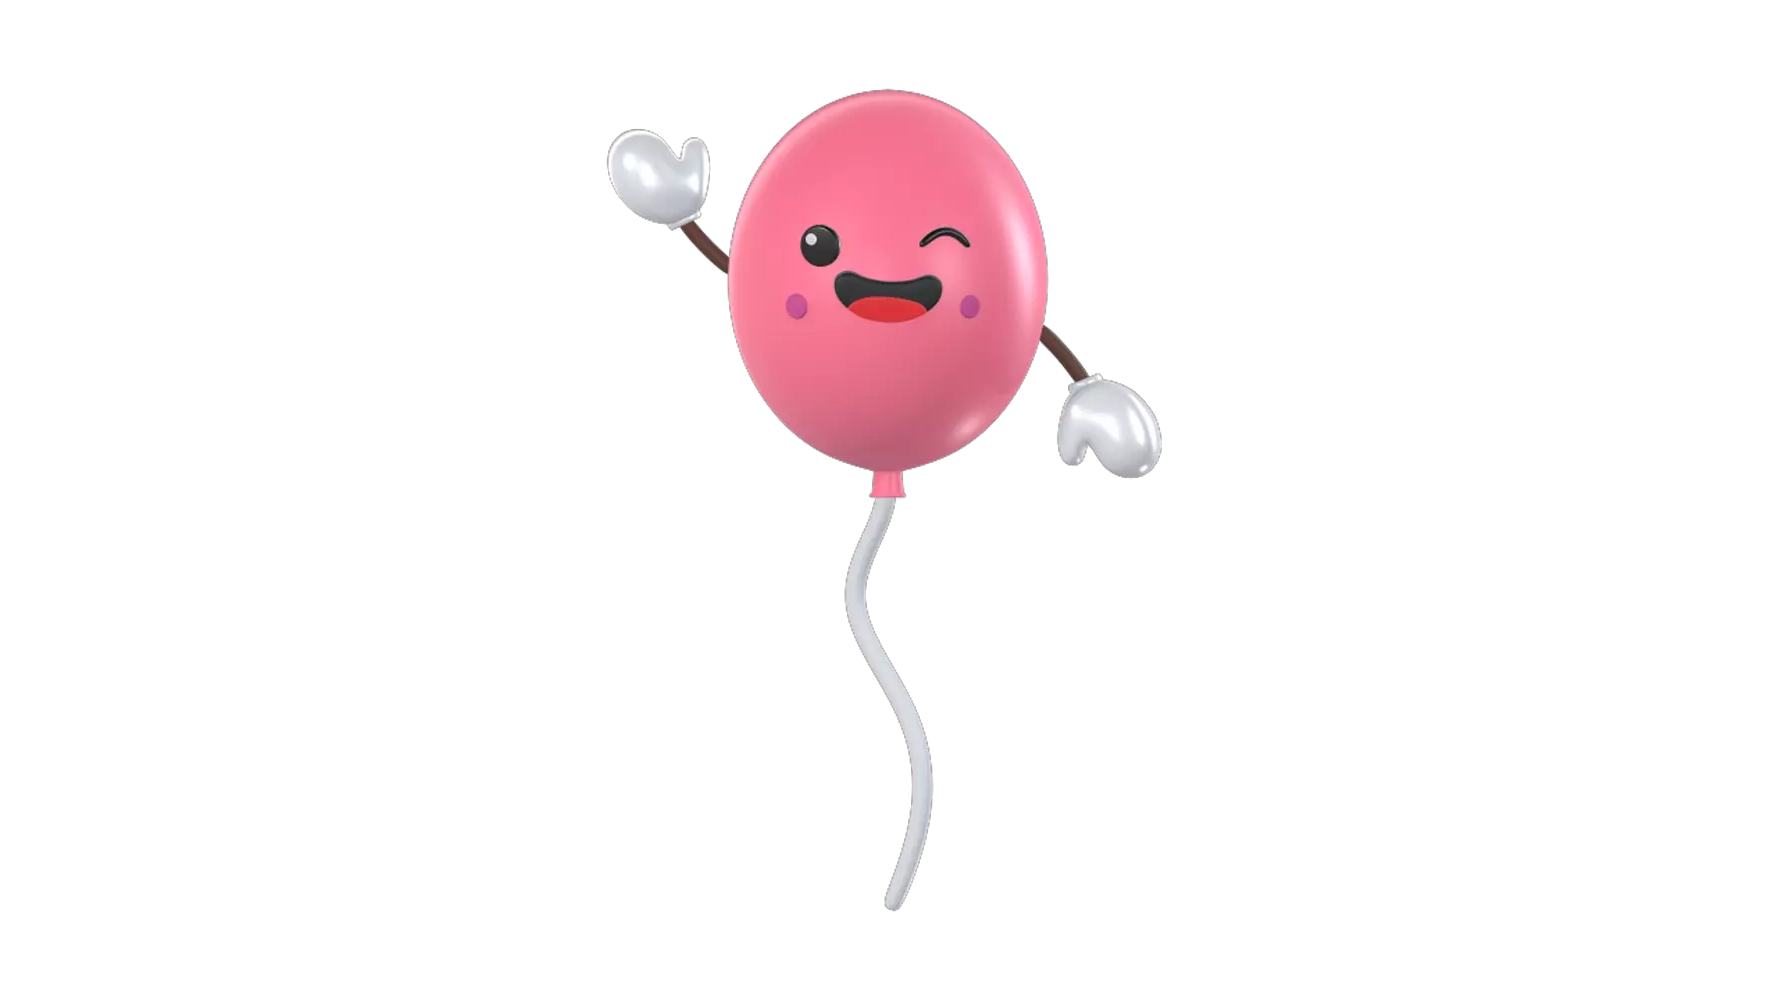 Cute Balloon 3D Graphic